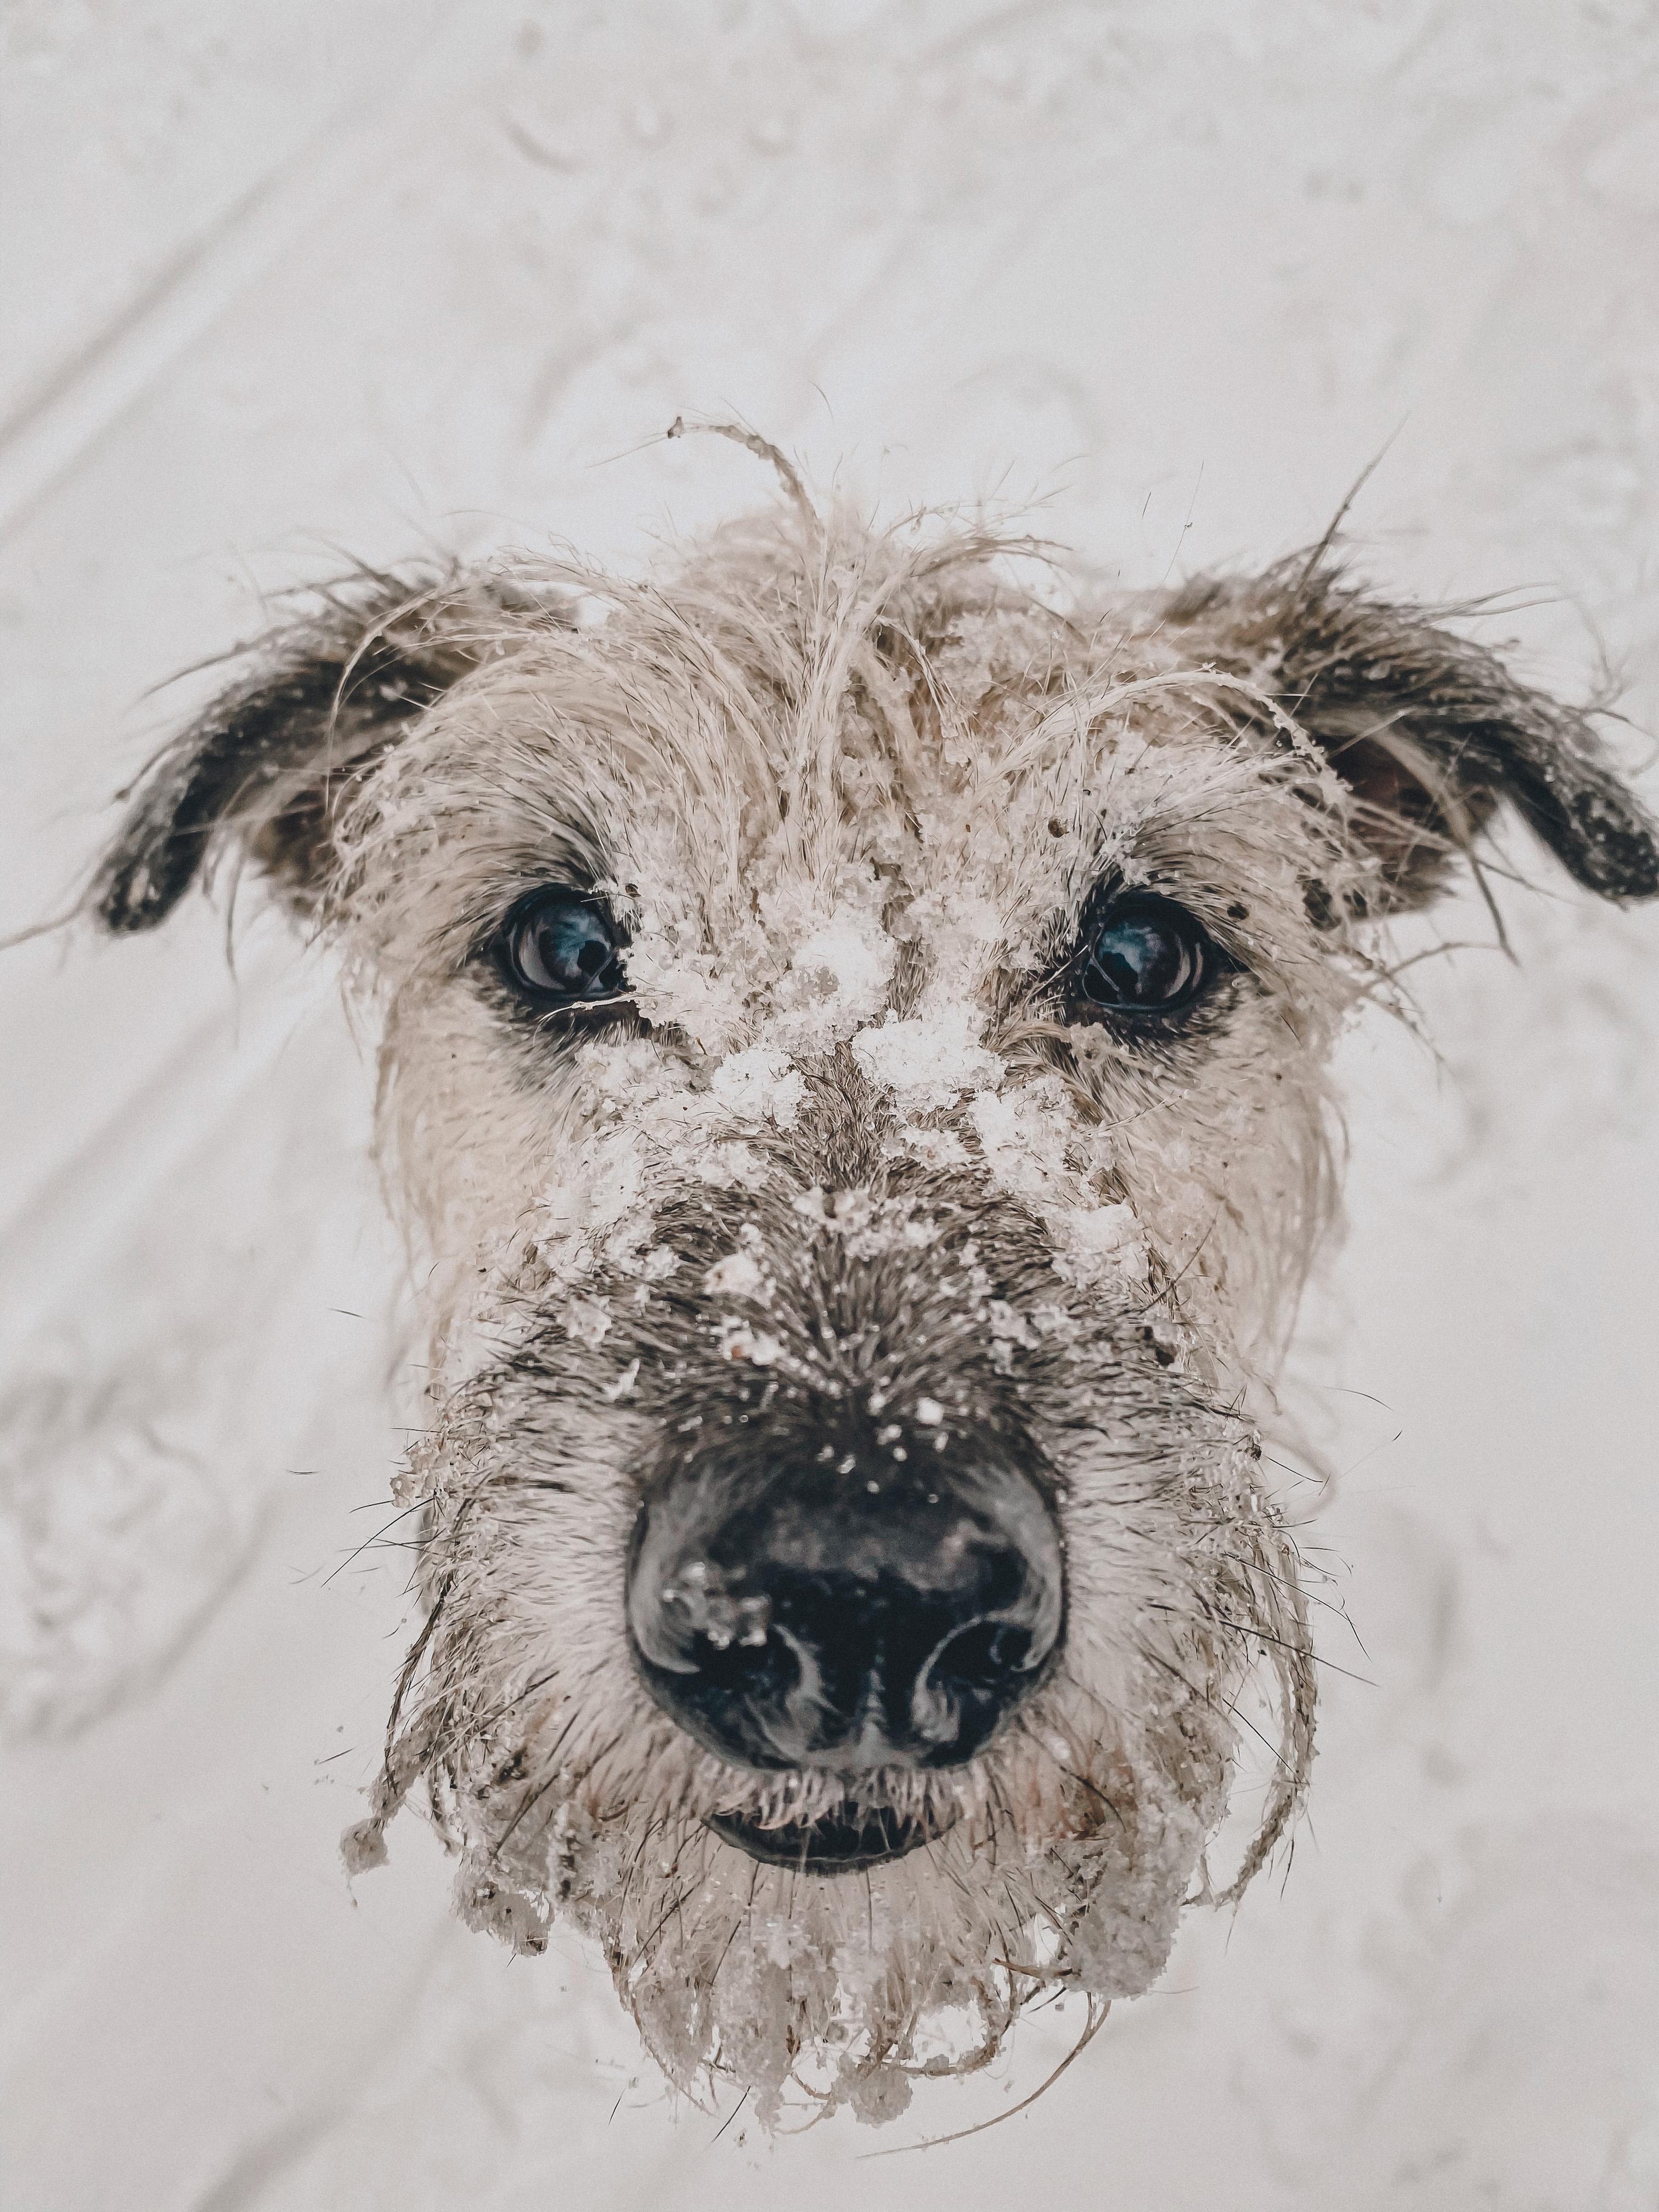 Bootsmann liebts im Schnee zu buddeln #dog 